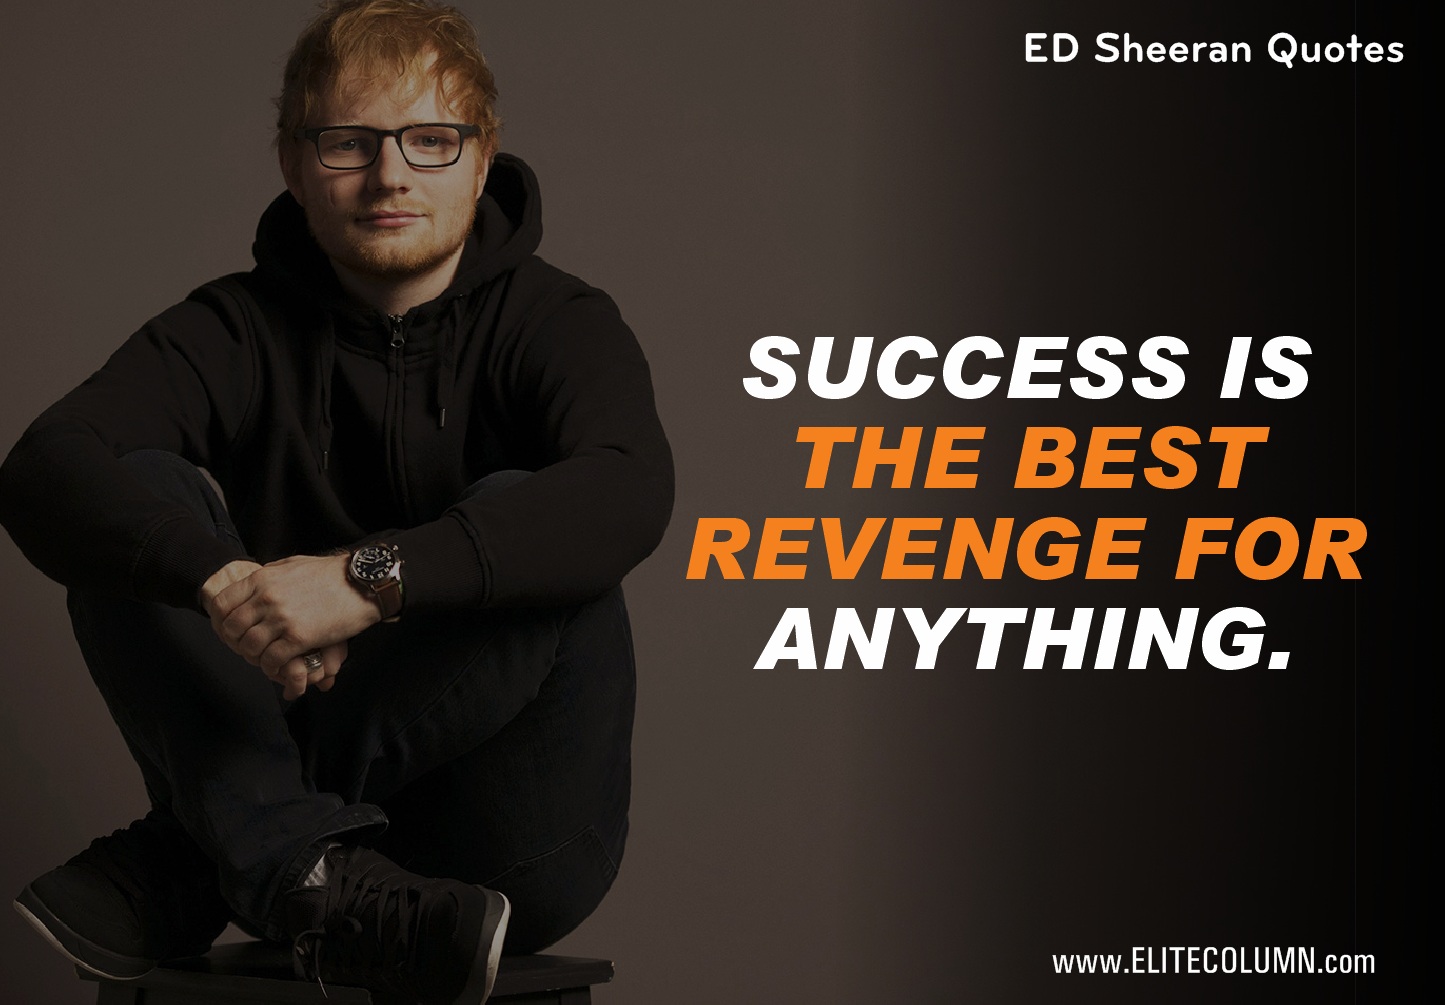 Ed Sheeran Quotes (1)